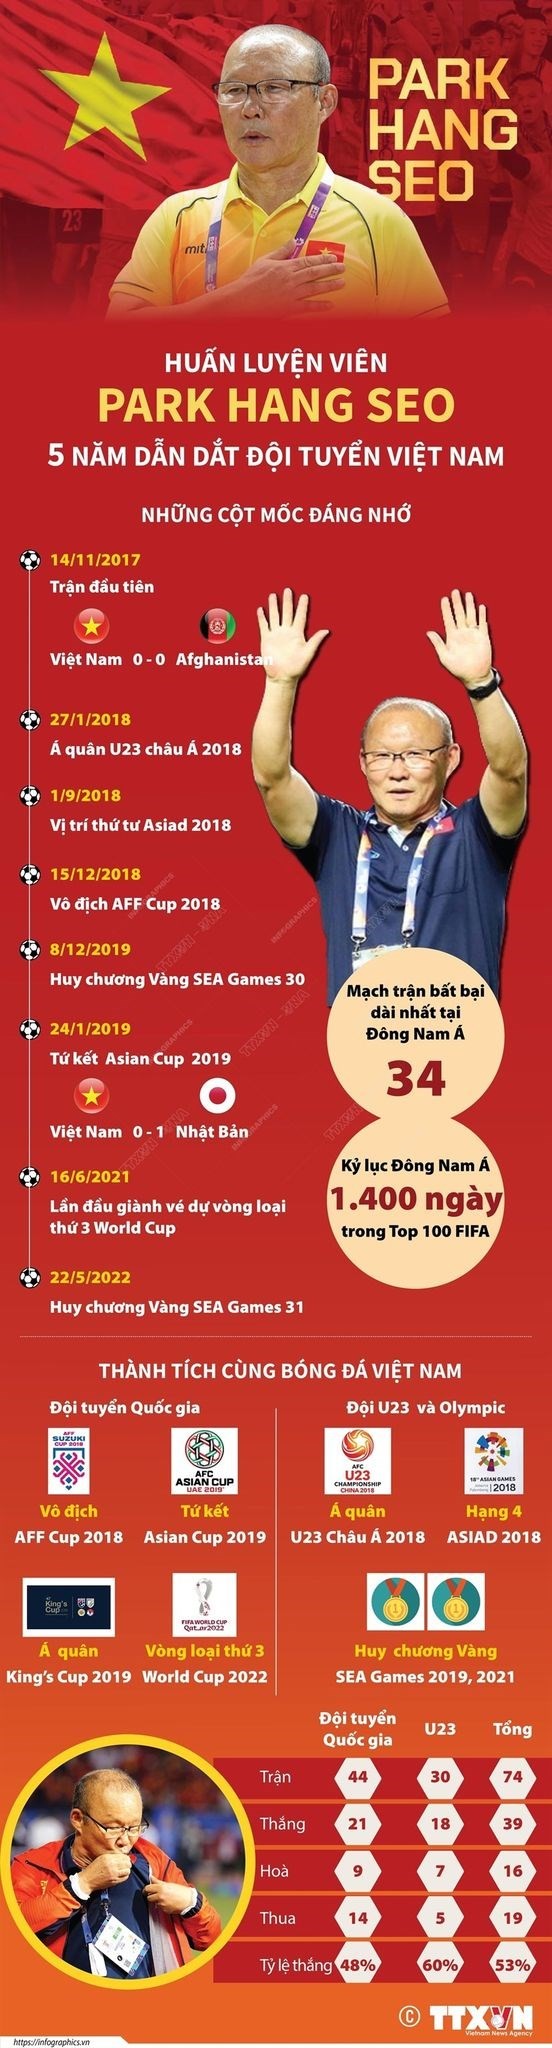 Sau thất bại trước ĐT Indonesia, ĐT Việt Nam đứng lên với chức vô địch lịch sử, thiết lập hàng loạt kỷ lục đáng tự hào - Ảnh 4.